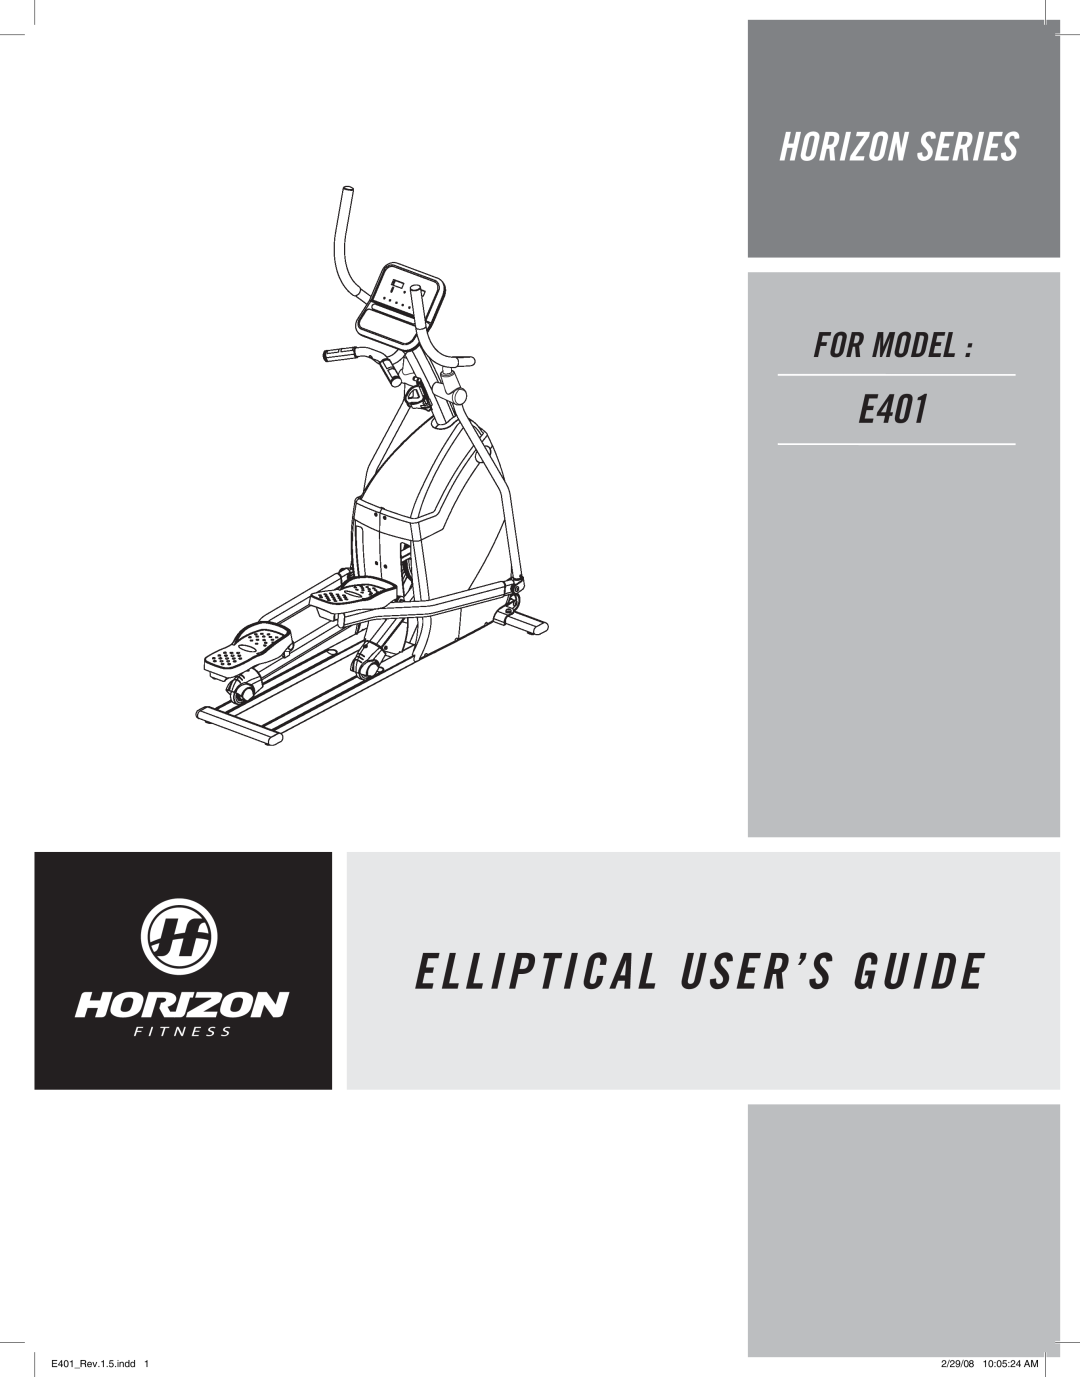 Horizon Fitness manual E L L I P T I C A L User’S Guide, Horizon Series, For Model, E401Rev.1.5.indd, 2/29/08 100524 AM 